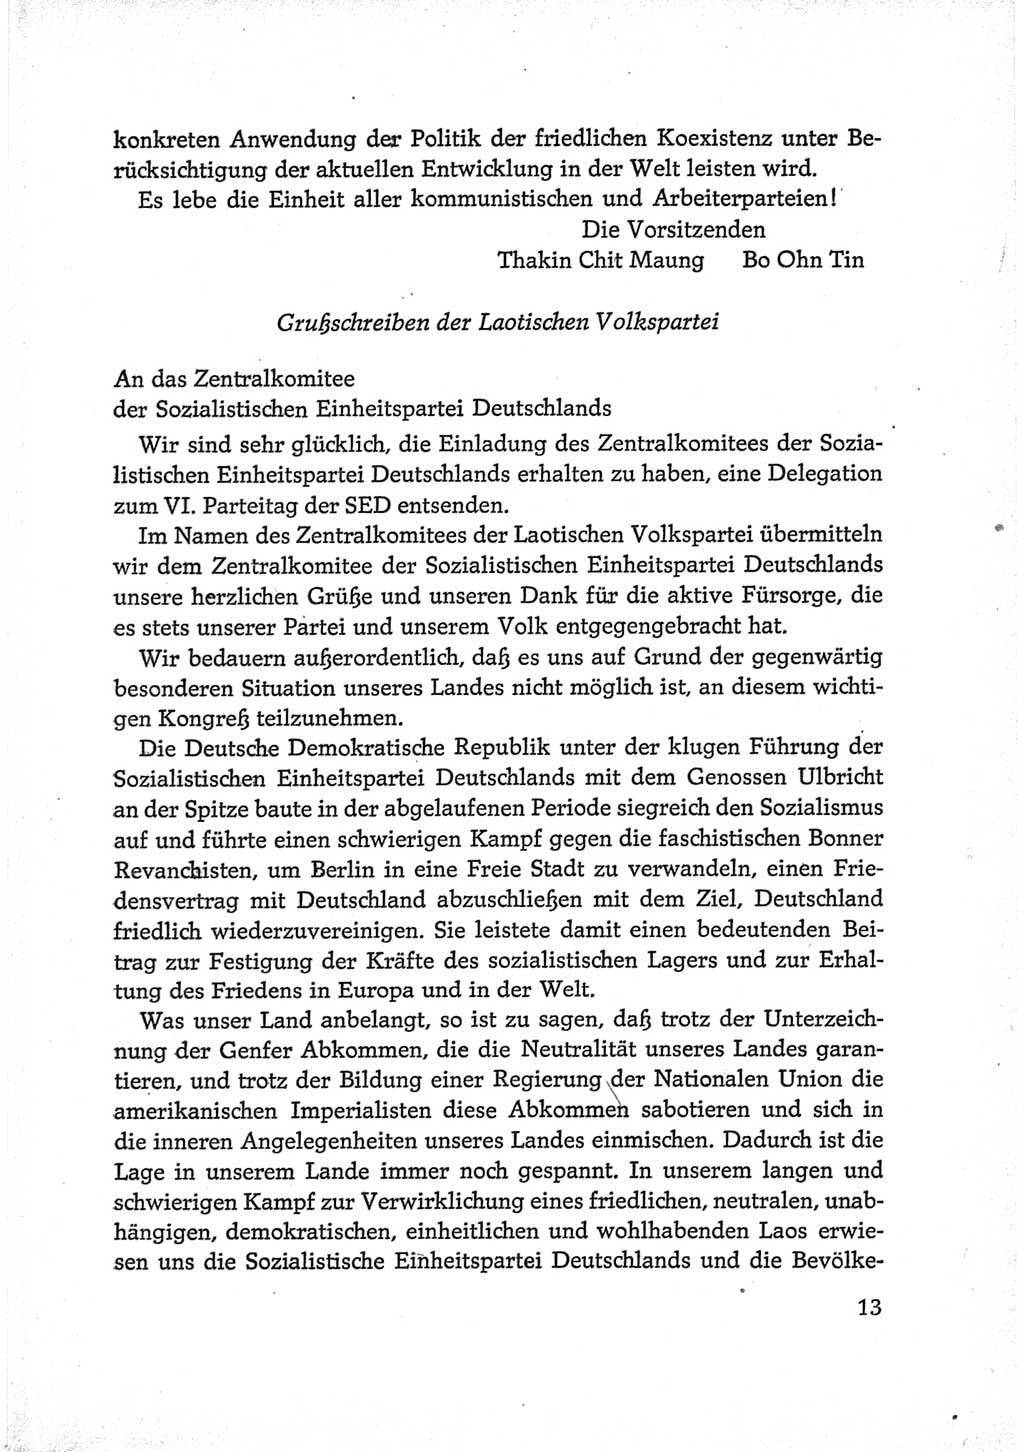 Protokoll der Verhandlungen des Ⅵ. Parteitages der Sozialistischen Einheitspartei Deutschlands (SED) [Deutsche Demokratische Republik (DDR)] 1963, Band Ⅲ, Seite 13 (Prot. Verh. Ⅵ. PT SED DDR 1963, Bd. Ⅲ, S. 13)